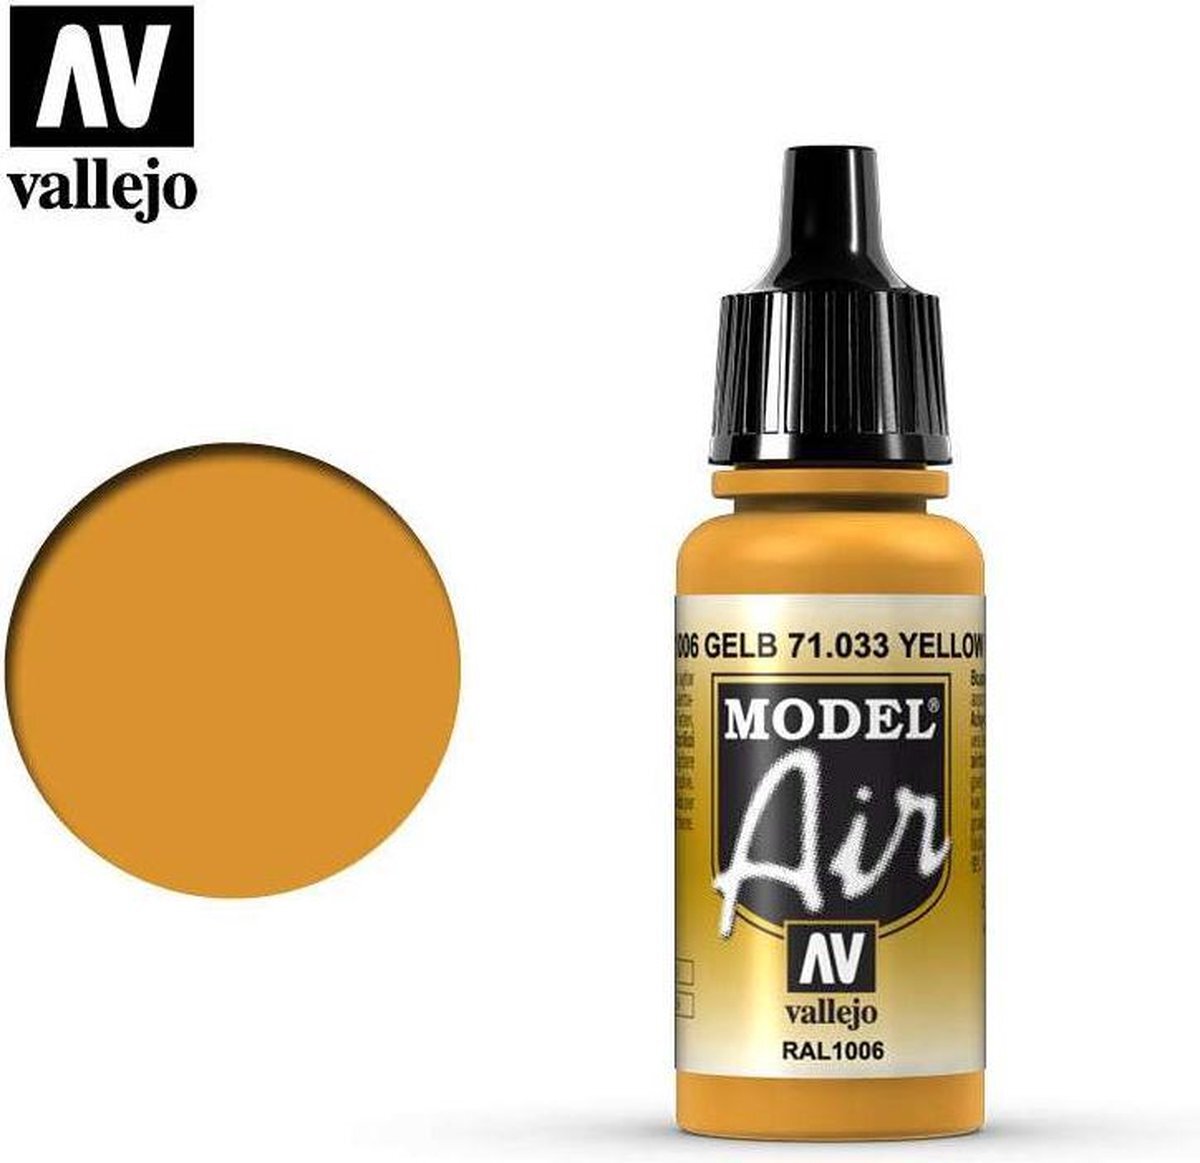 Vallejo Model Air acrylverf, 17 ml oker